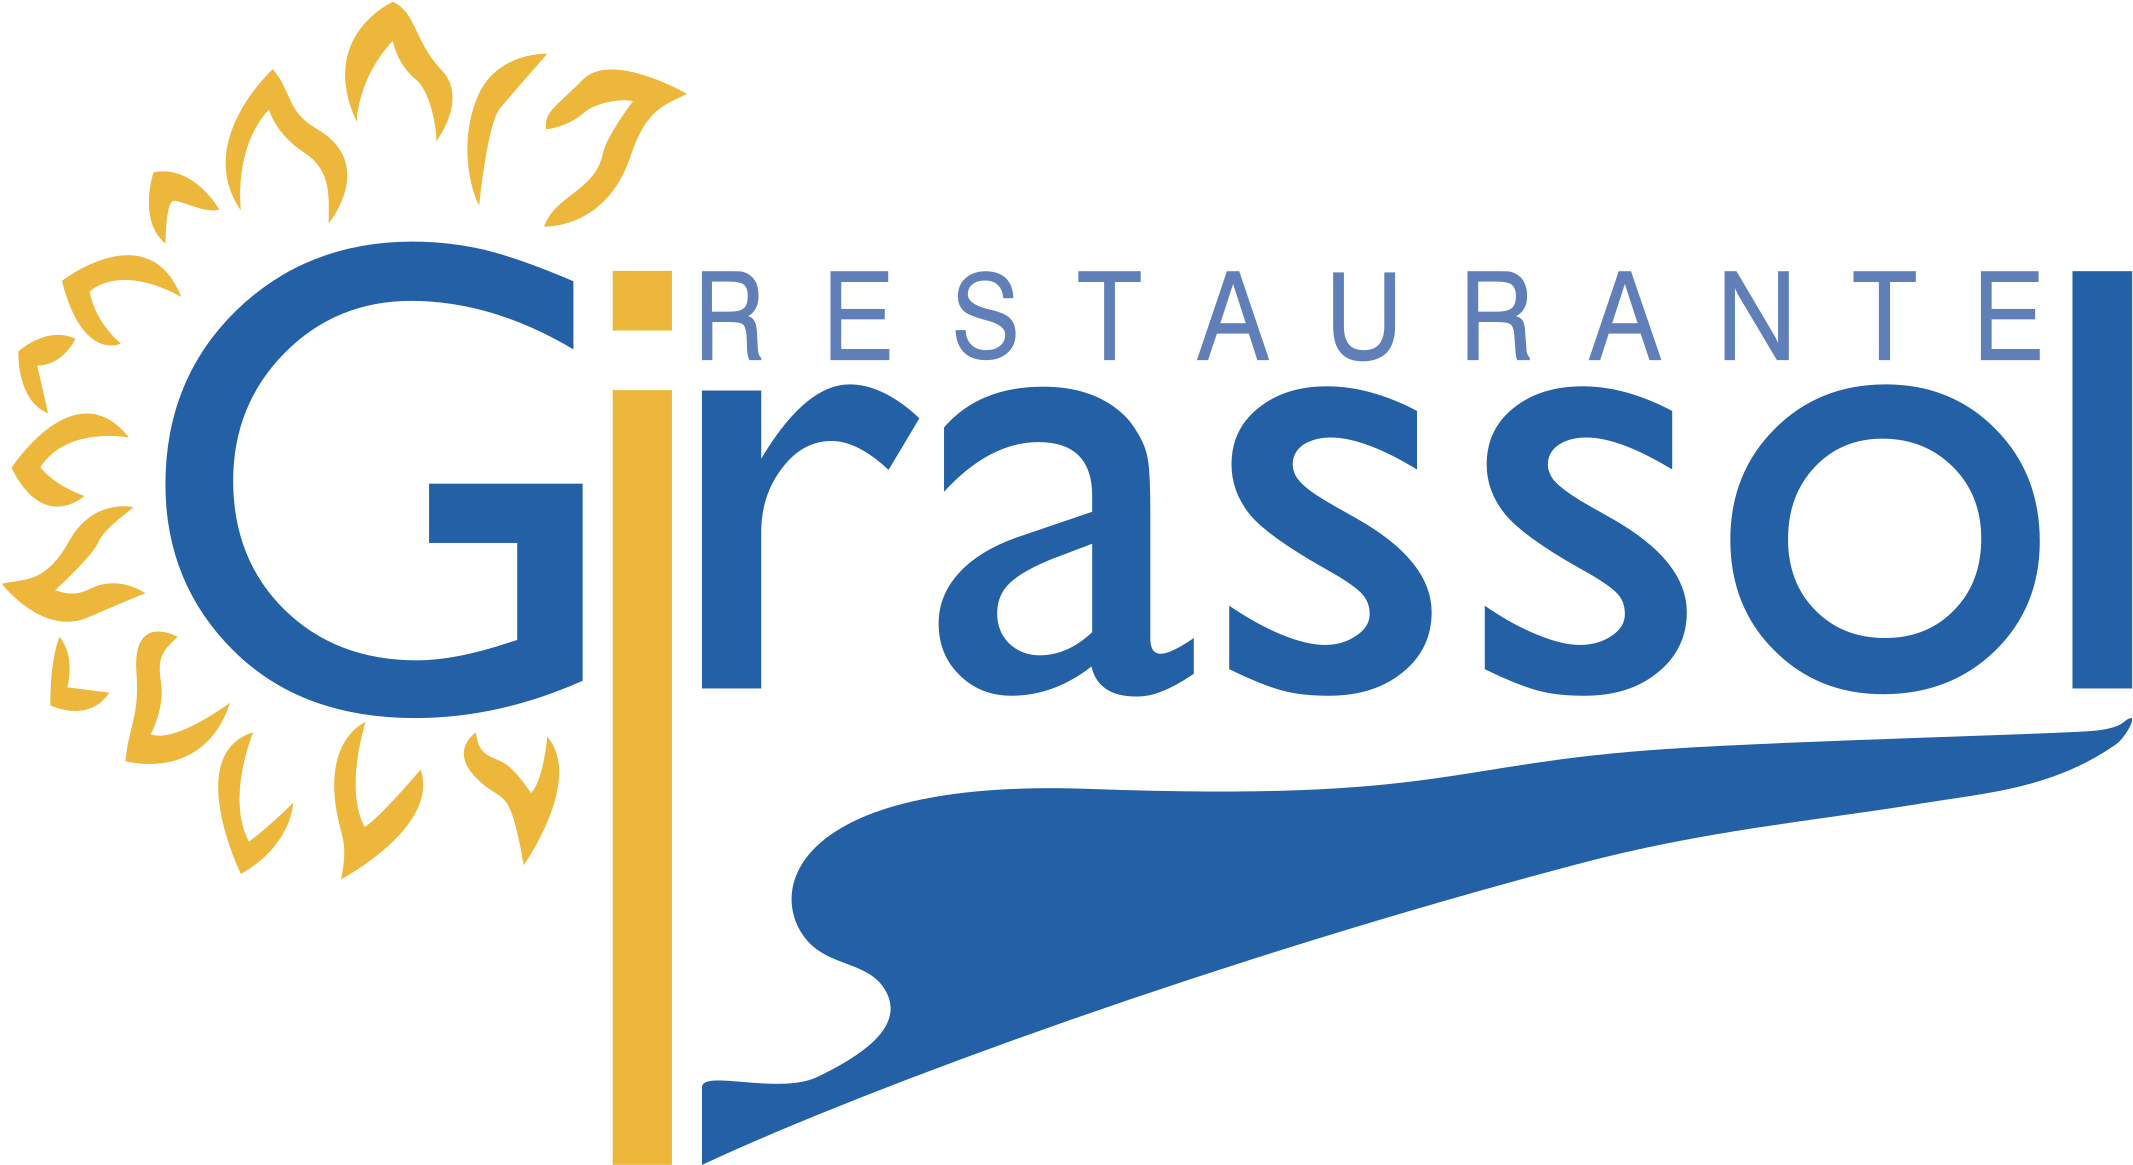 Restaurante Girassol Logo Black And White - Girassol (2400x2400)